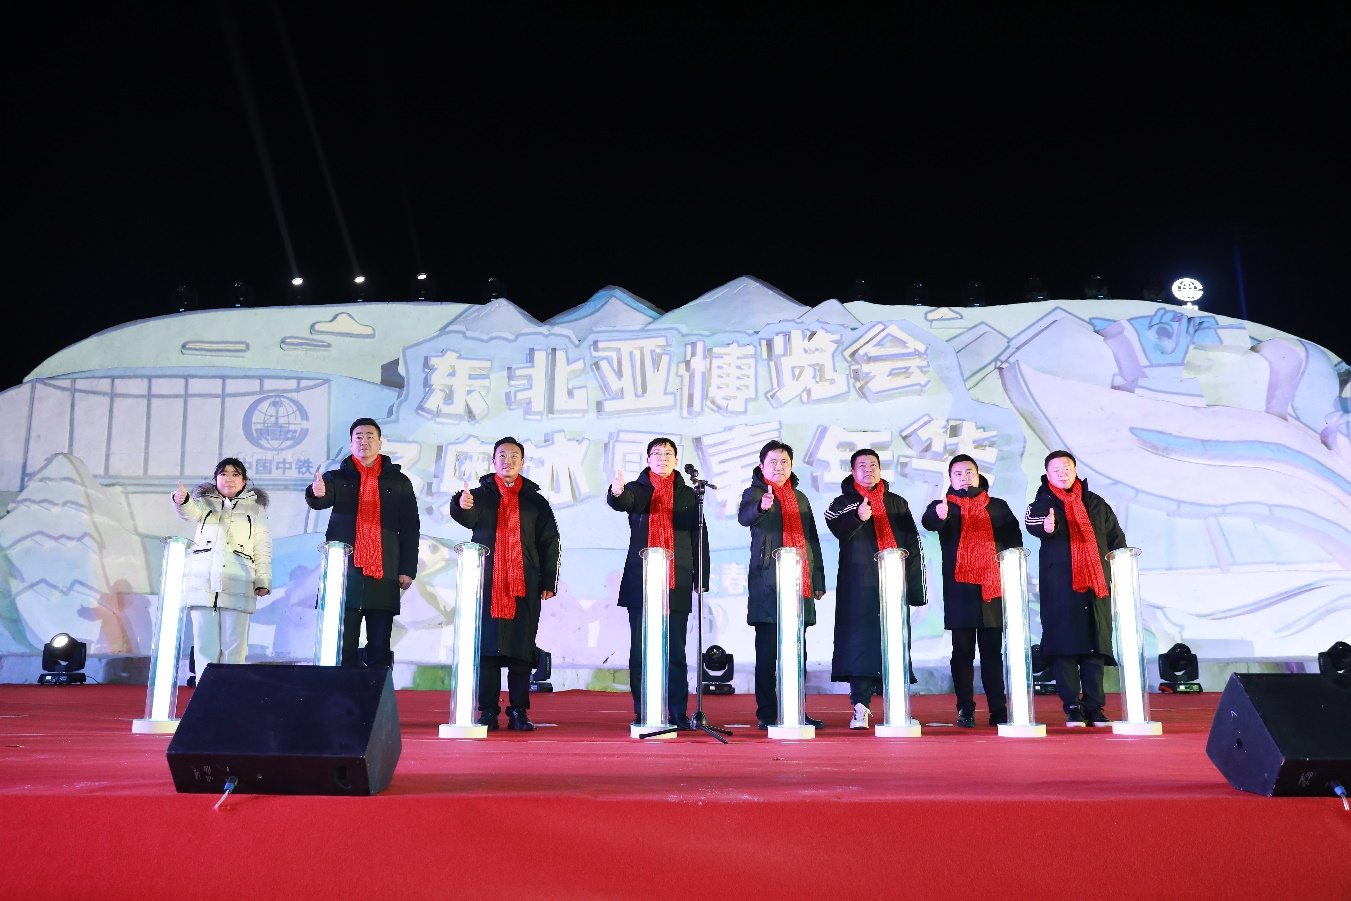 冰雪大惠民 欢乐博览城 东北亚博览会首届冬奥冰雪嘉年华在中铁·长春博览城举行